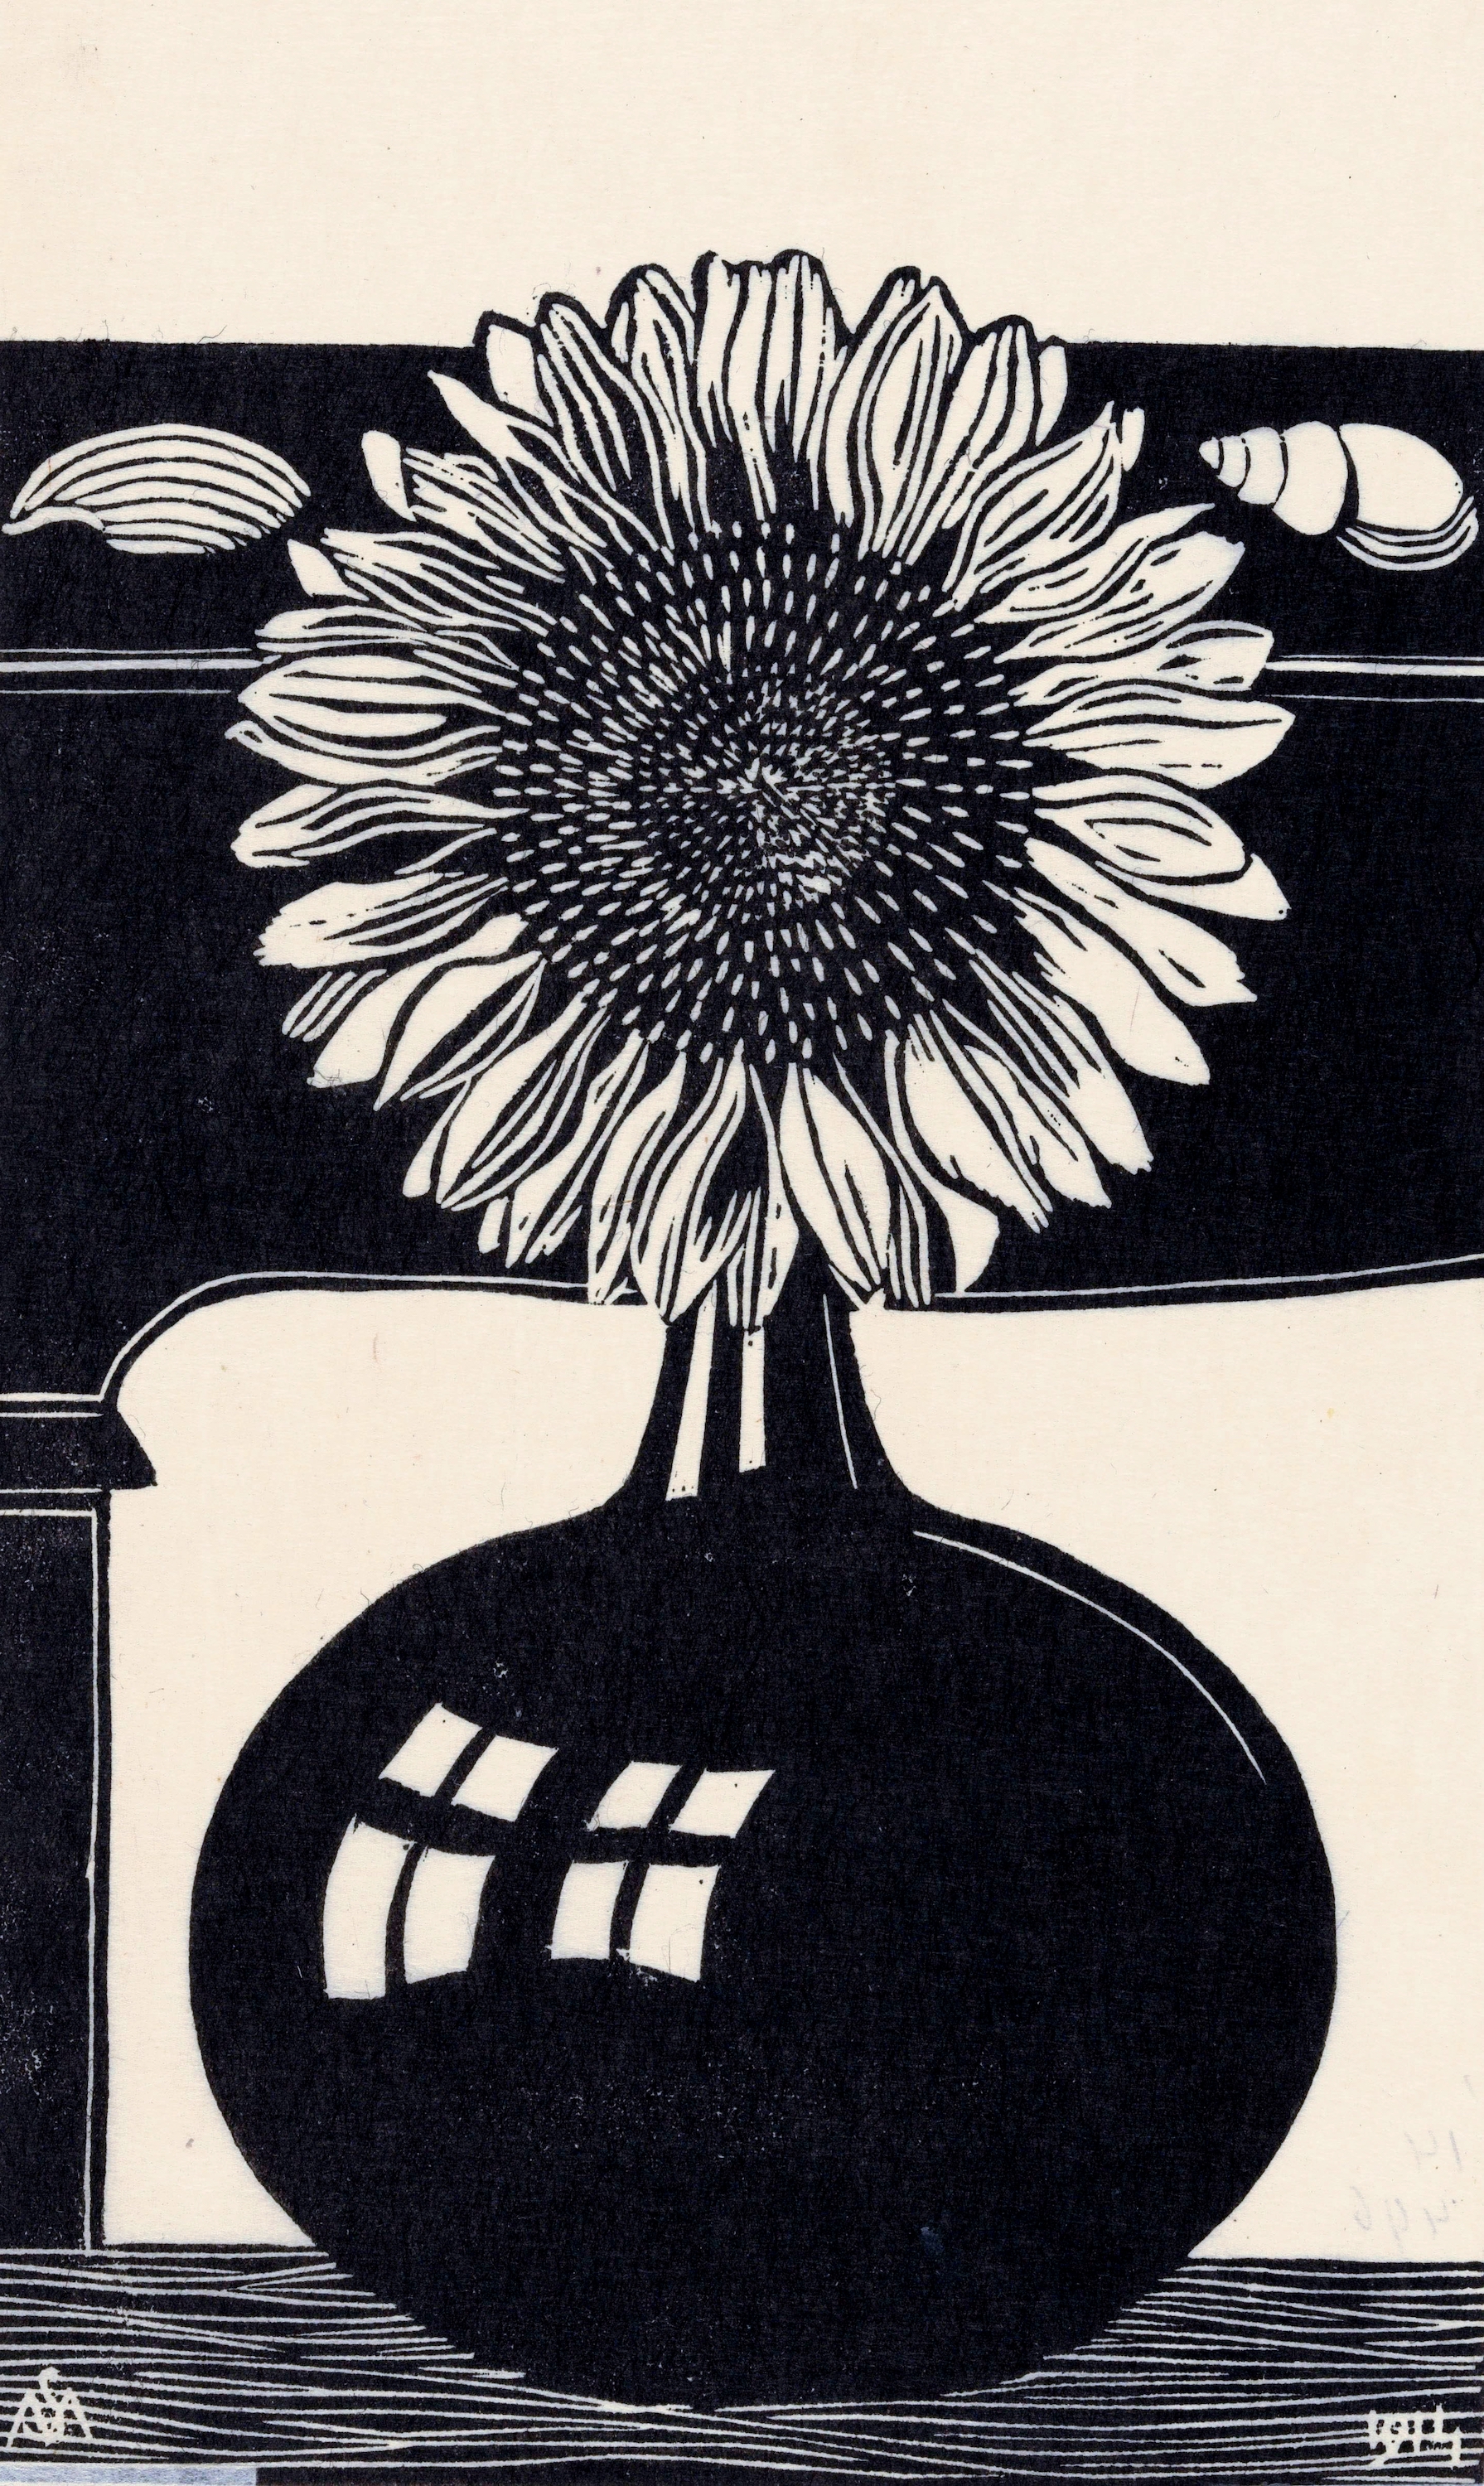 Ayçiçeği by Samuel Jessurun de Mesquita - 1914 - 29,9 x 19,5 cm özel koleksiyon